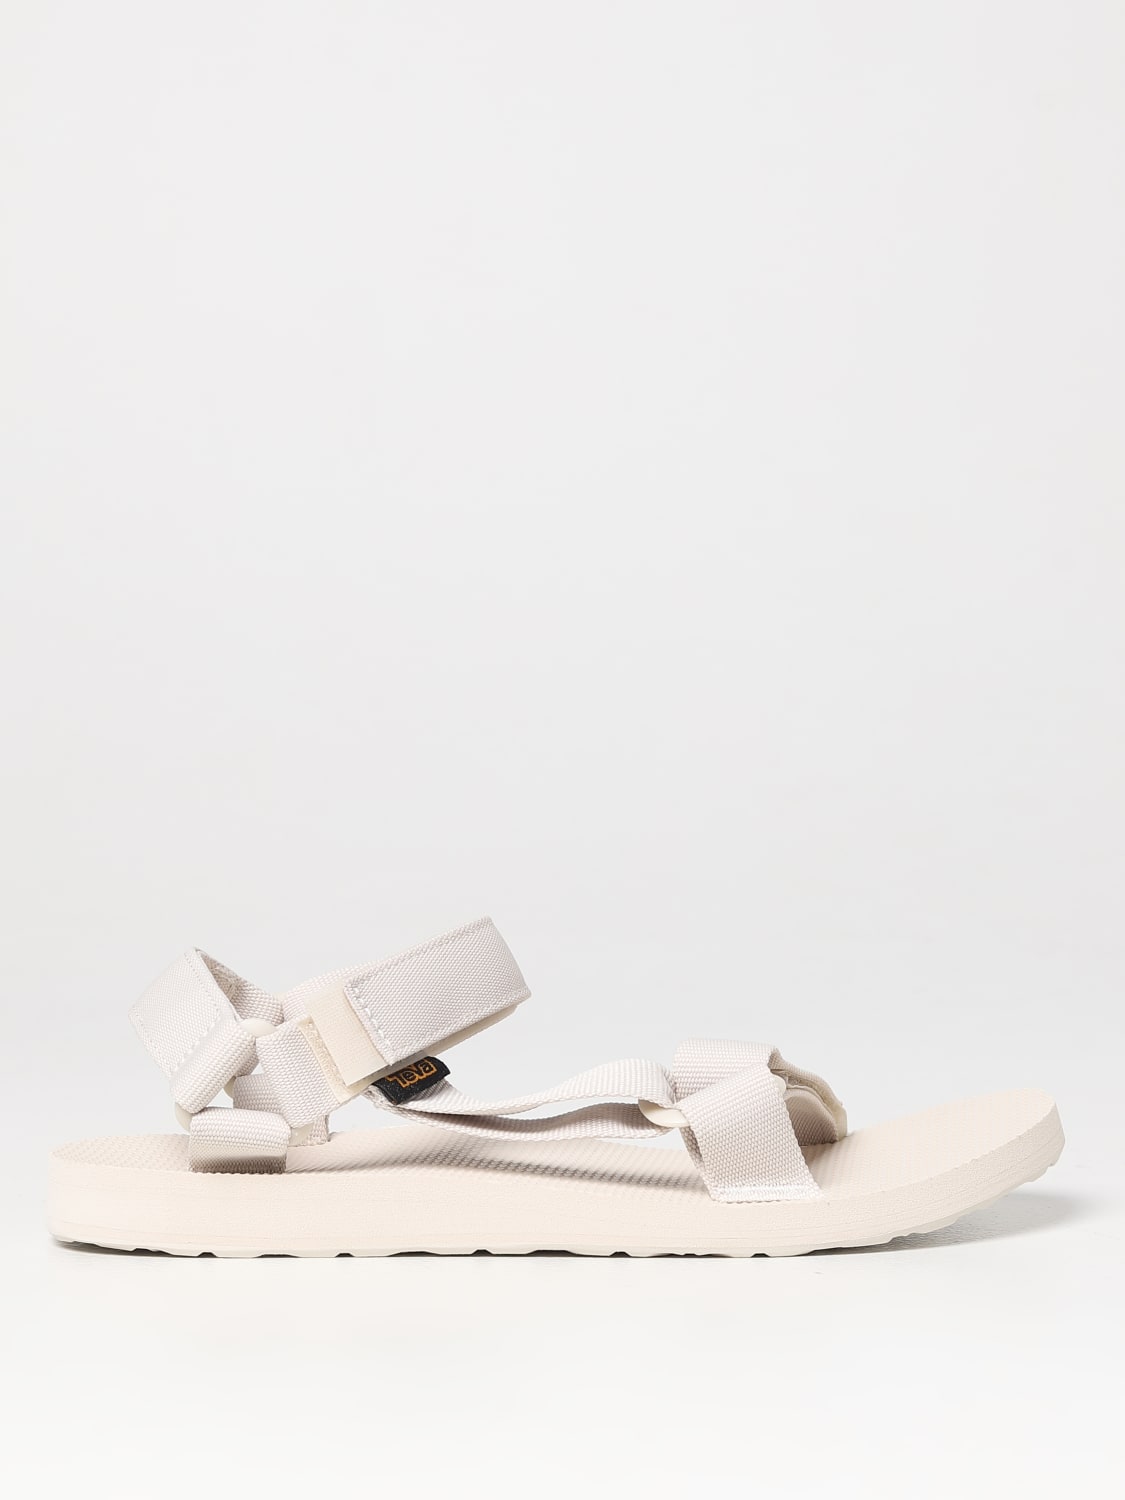 kalf Zorg Vuil TEVA: sandals for man - Ice | Teva sandals 1004006 online on GIGLIO.COM